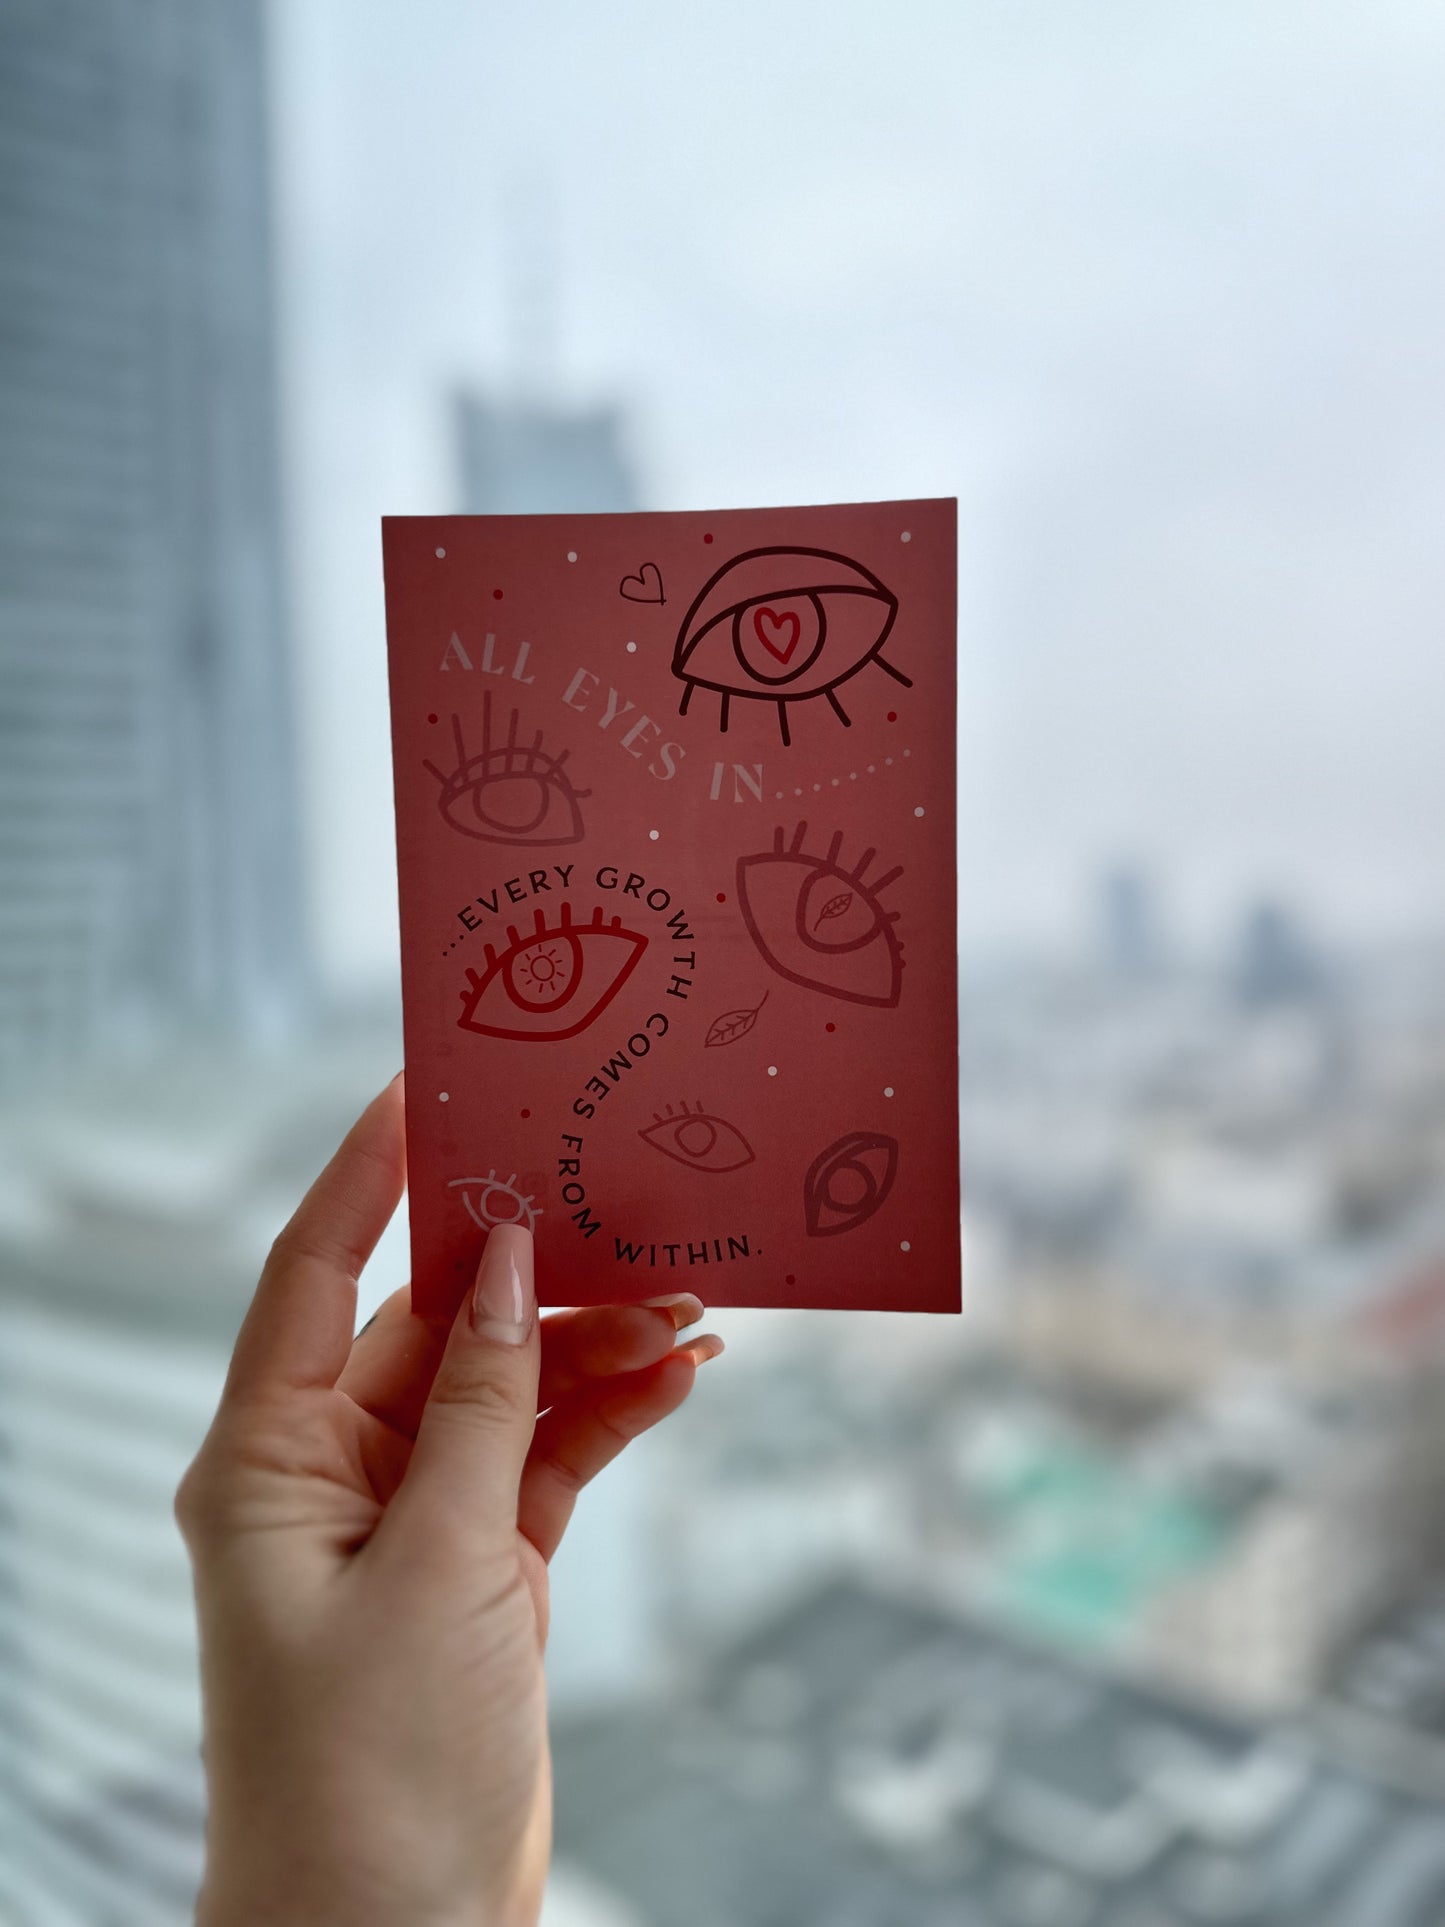 Eine Postkarte in der Hand vor ein Fenster gehalten mit Augen und "Every growth comes from within" Aufdruck